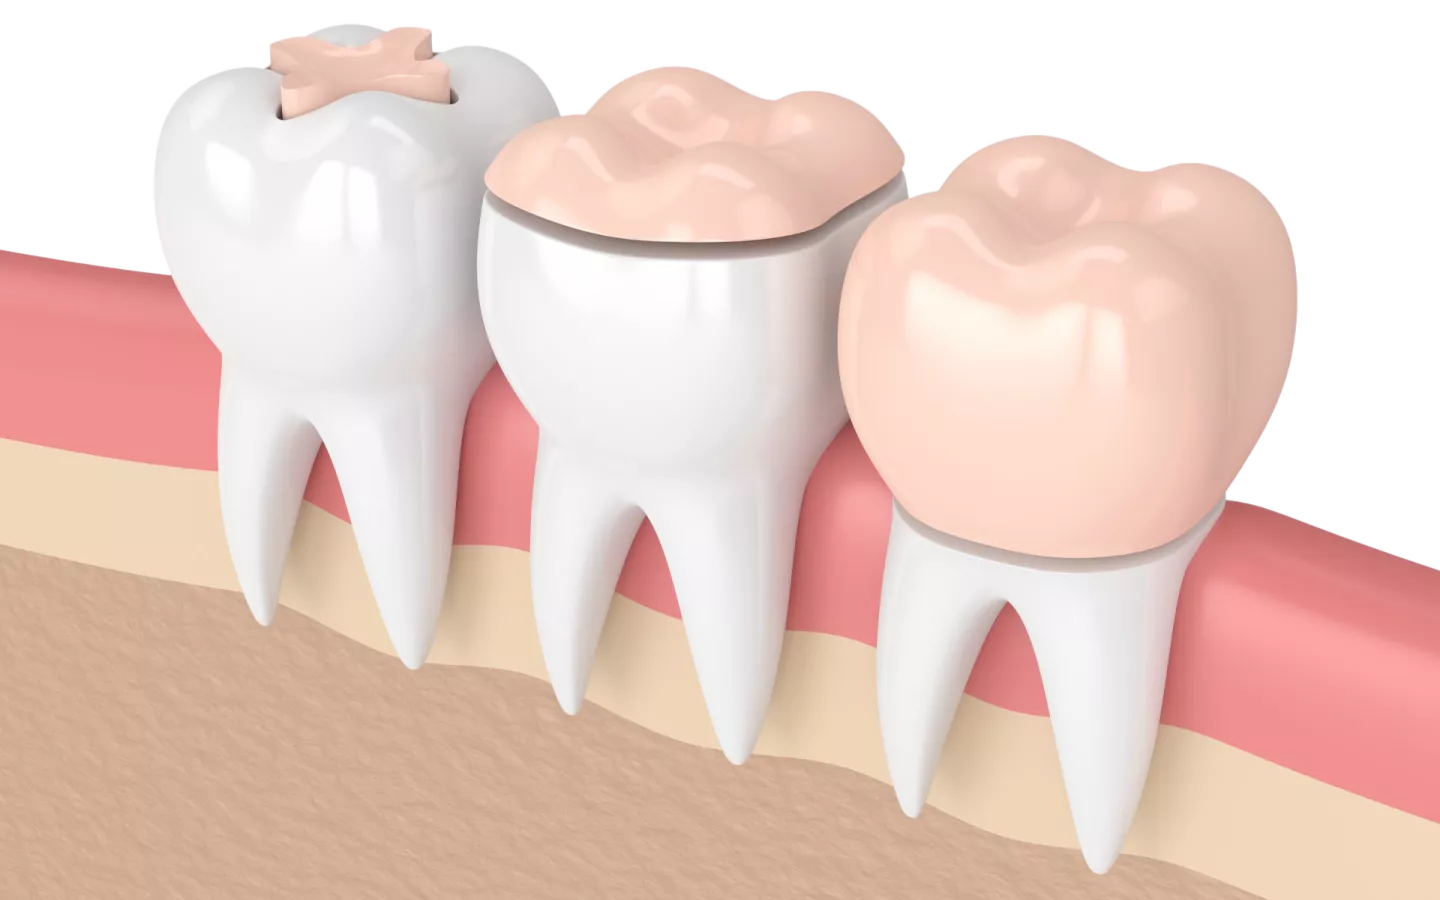 Couronne dentaire: une prothèse qui remplace la partie visible de la dent